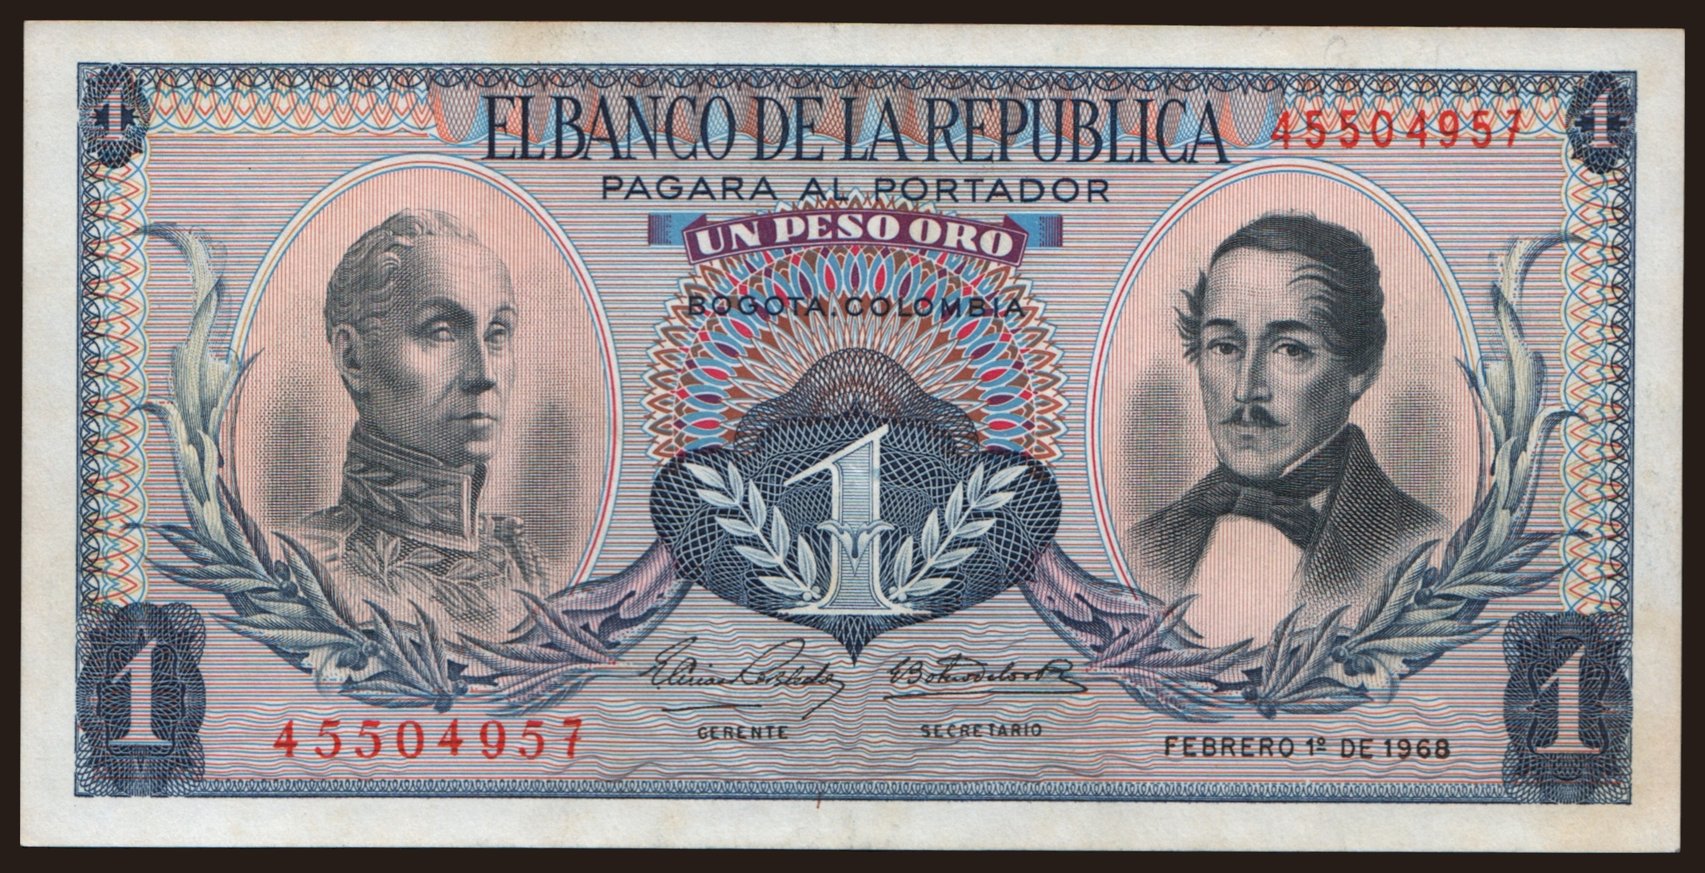 1 peso, 1968